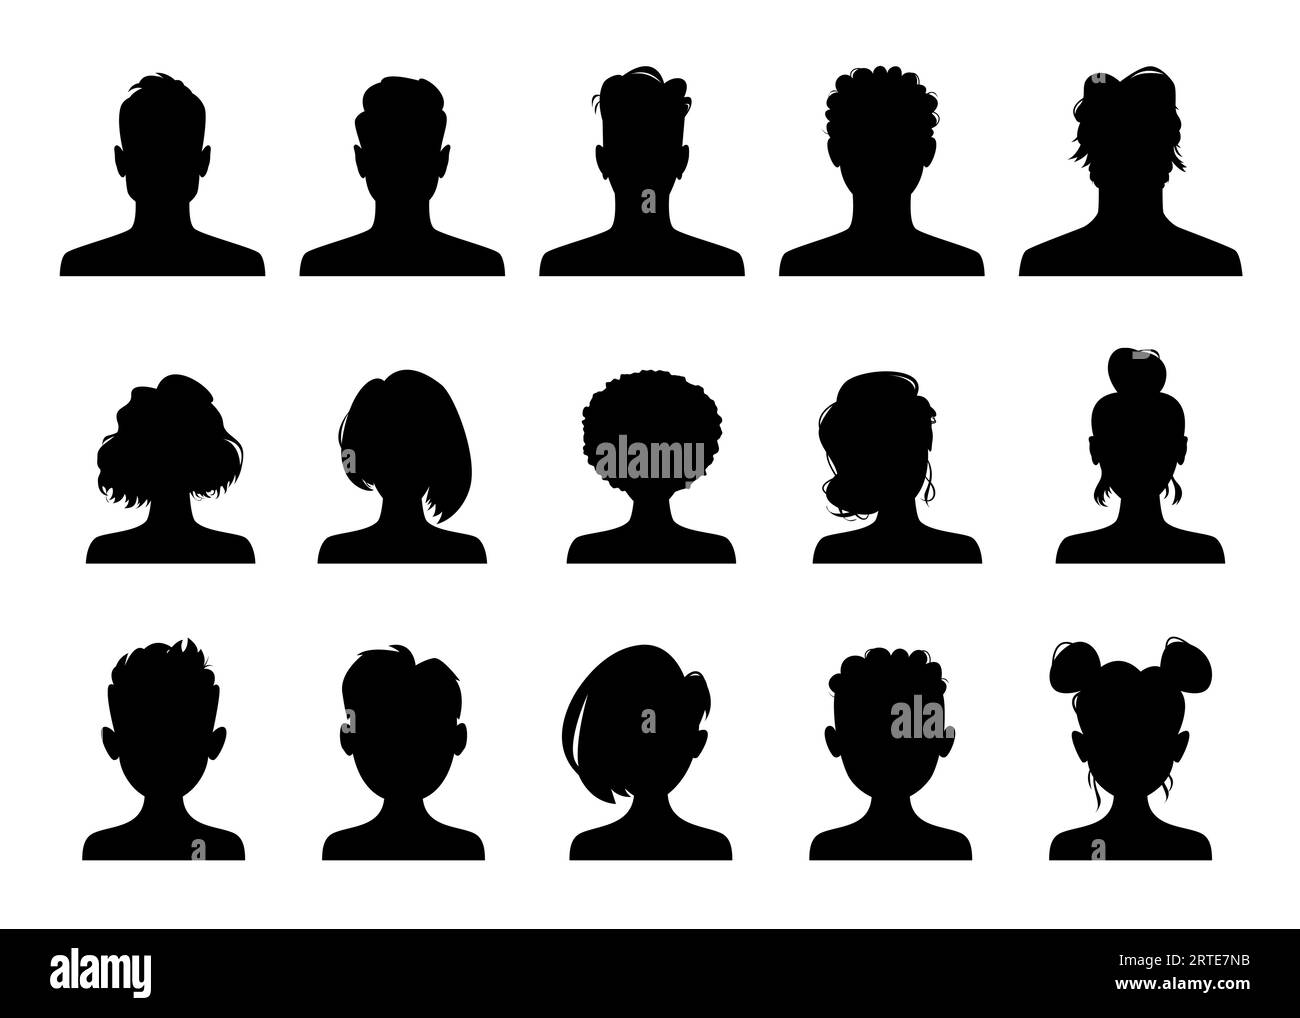 Avatar-Profilsilhouetten, Vektorporträts von Personenköpfen. Männliche oder weibliche Avatare anonymer Personen, Symbol für Nutzerprofile in sozialen Medien, Silhouetten von Mann, Frau, Mädchen und Jungen mit modernen Frisuren Stock Vektor